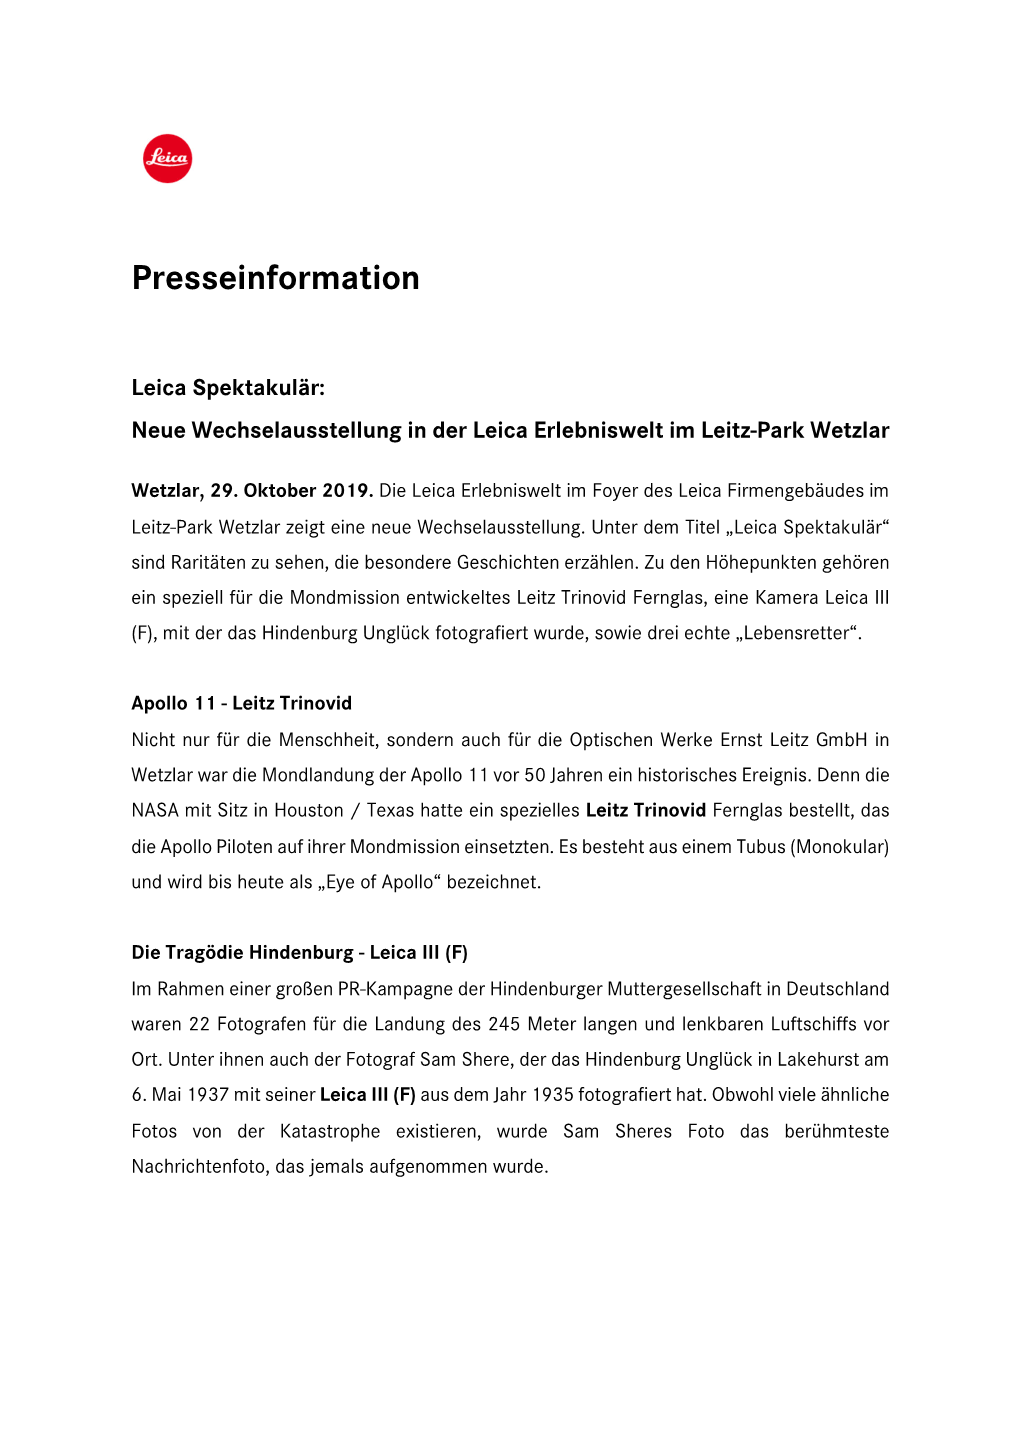 Presseinformation Neue Wechselausstellung Im Leitz-Park.Pdf